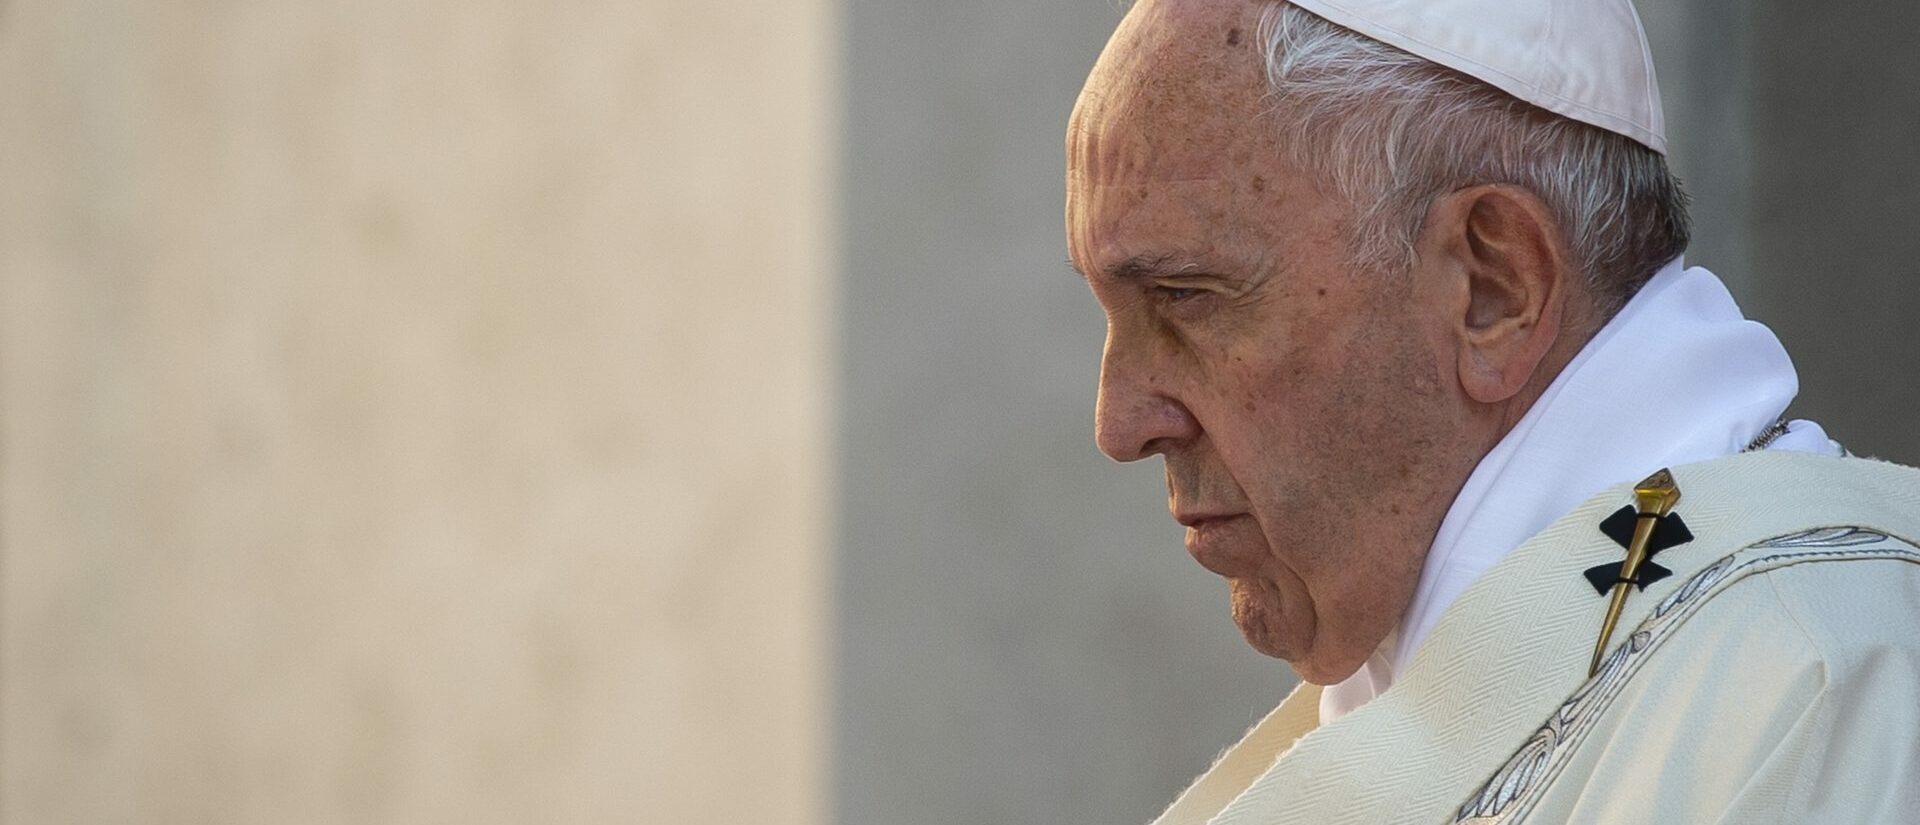 Le pape François s'inquiète de la tendance de certains prêtres à s'éloigner de Vatican II | photo d'illustration © Antoine Mekary I.Media